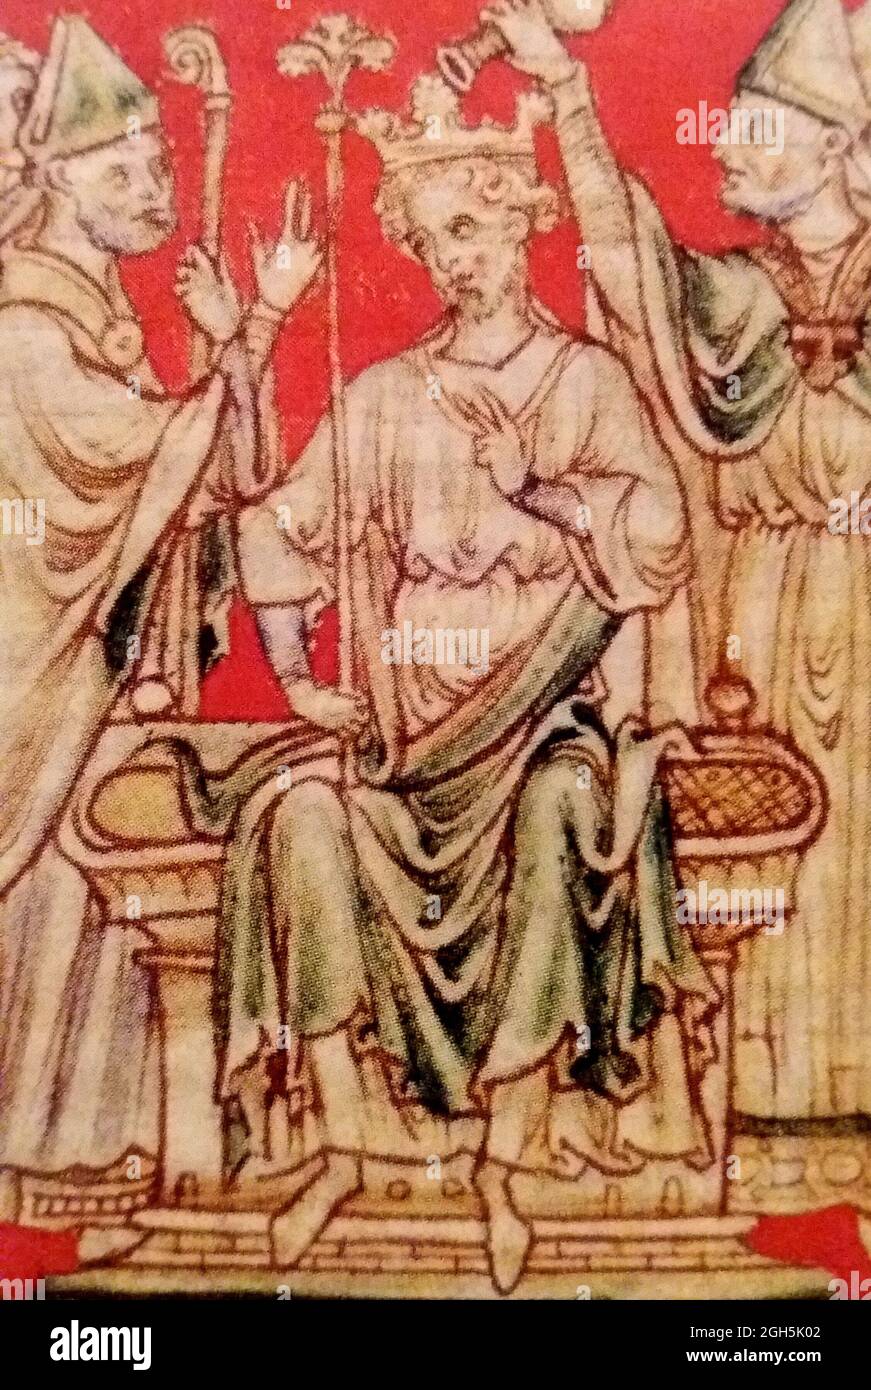 Ein Porträt von Richard I. oder Richard Löwenherz, der von 1189 bis 1199 König von England war Stockfoto